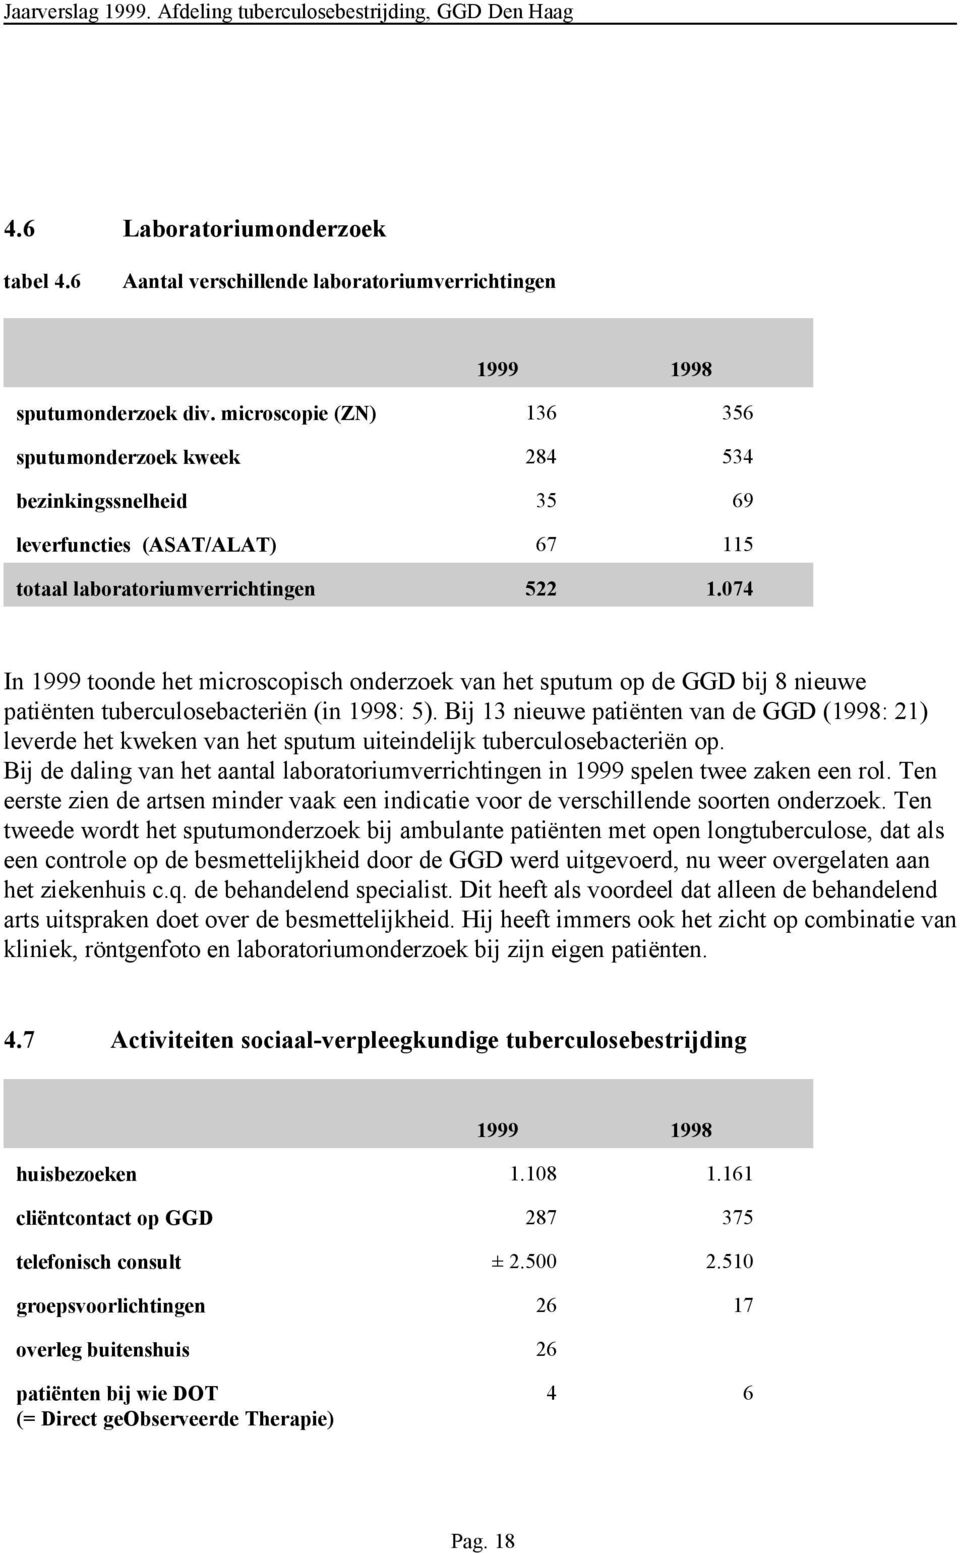 074 In 1999 toonde het microscopisch onderzoek van het sputum op de GGD bij 8 nieuwe patiënten tuberculosebacteriën (in 1998: 5).